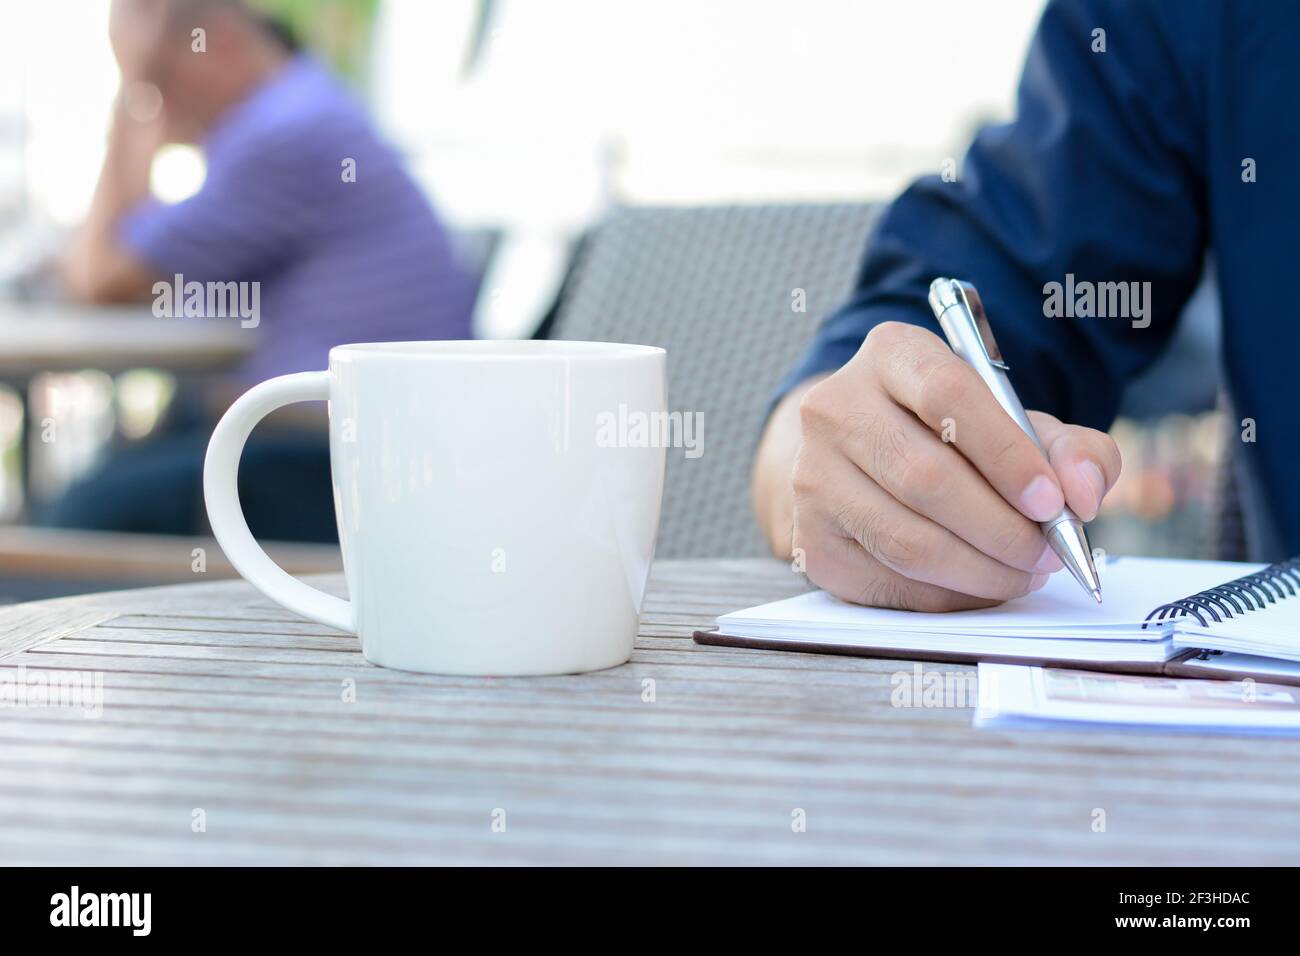 Un homme écrit à la main sur un carnet avec une tasse de café à côté Banque D'Images